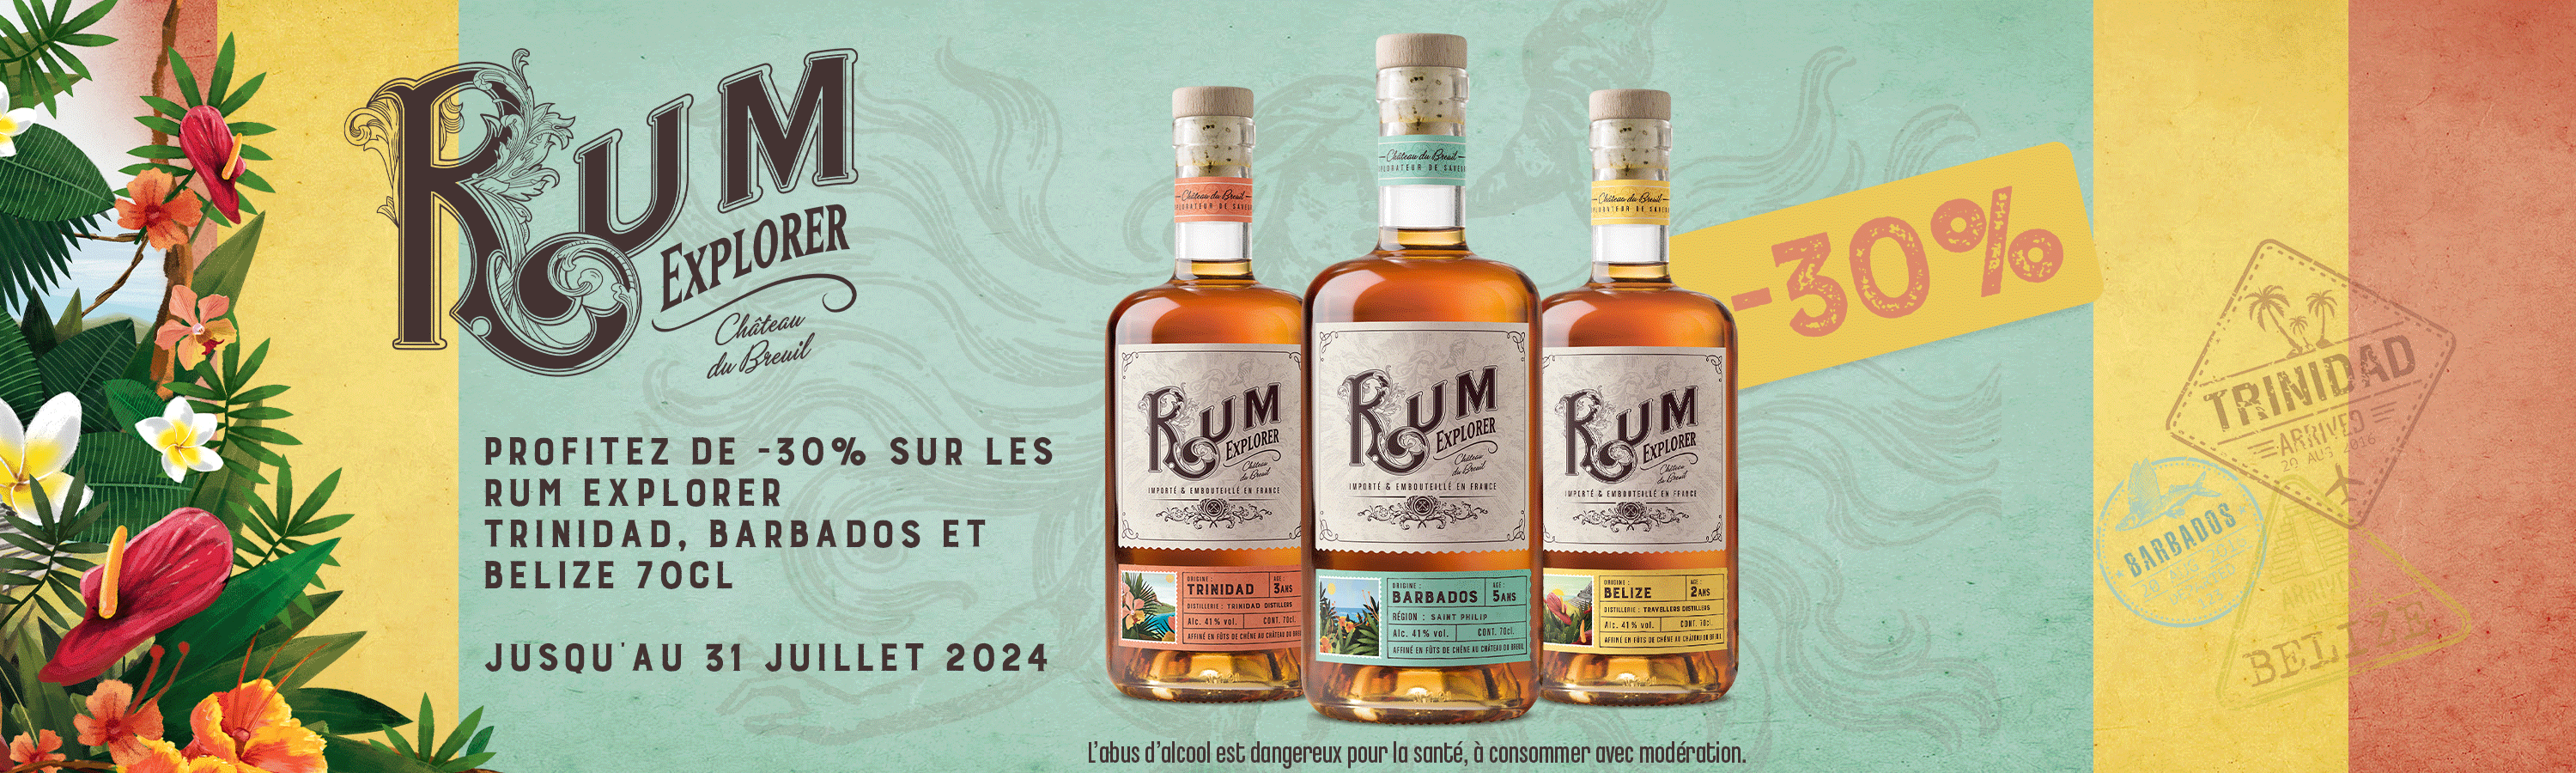 Promotions Rum Explorer - -30% sur Trinidad, Barbados et Belize